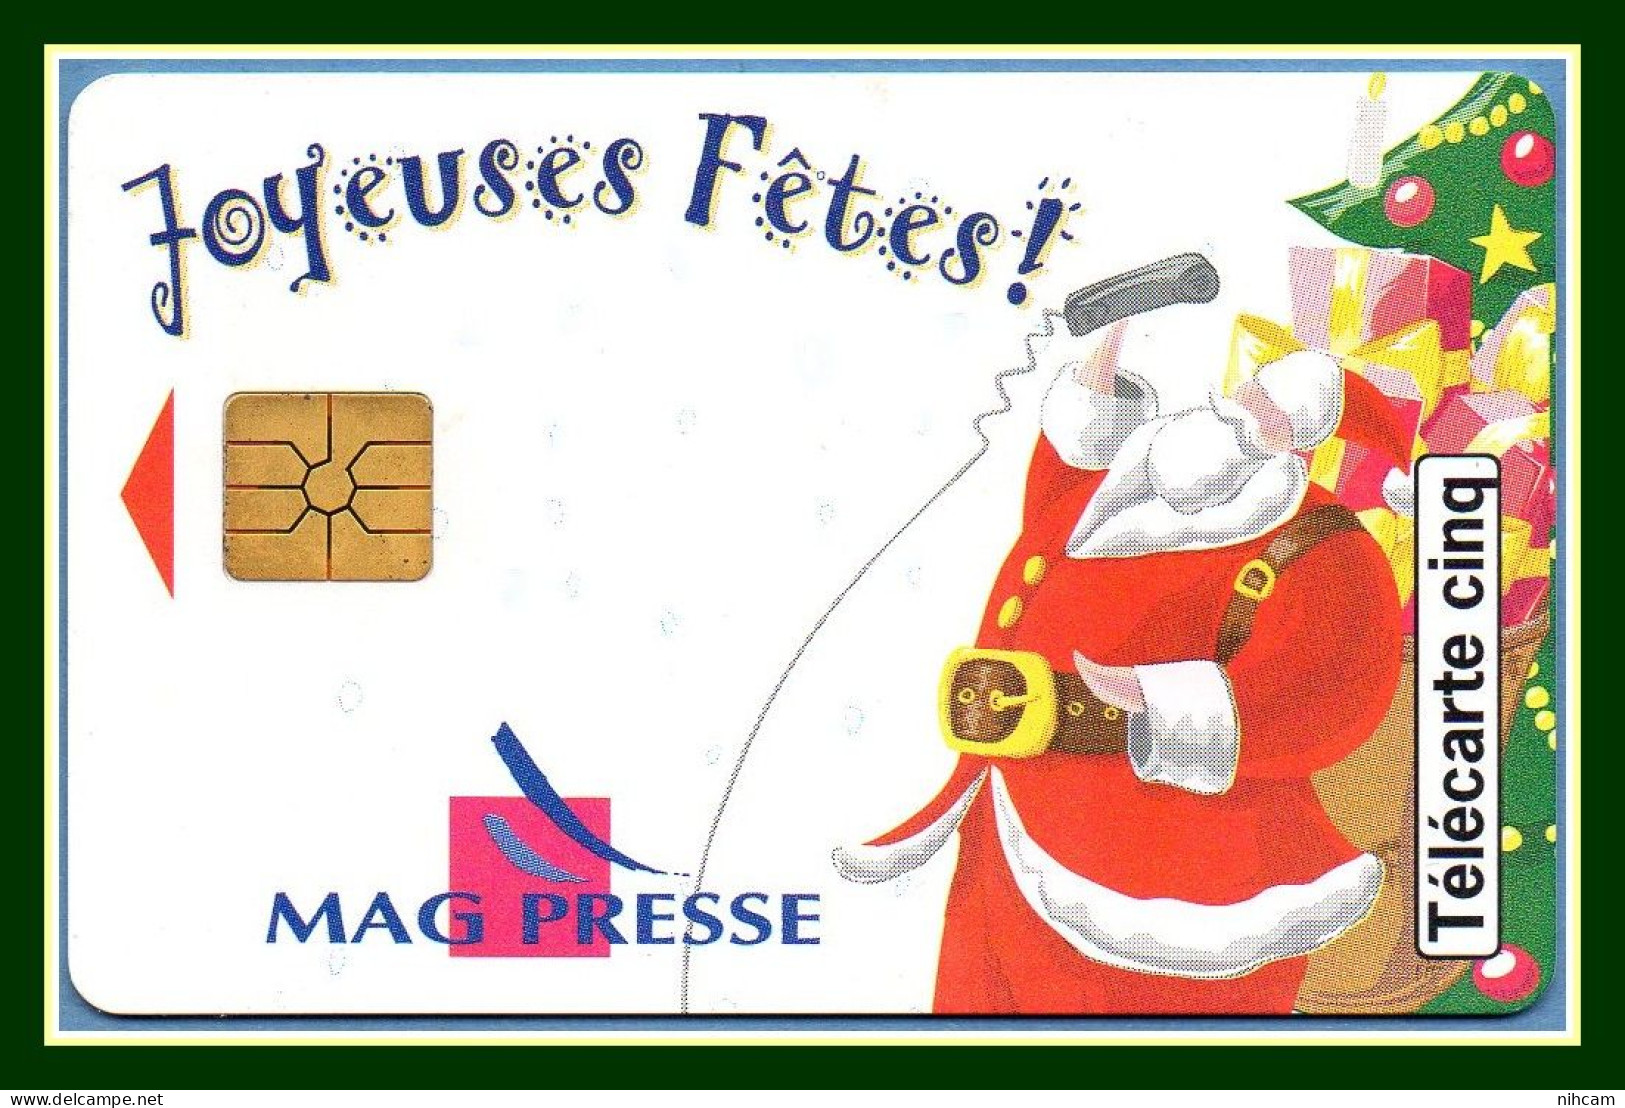 Télécarte France 5 U Neuve Mag Presse Joyeuses Fêtes Père Noël 10/96 17000 Ex (R) Mint - 5 Unités